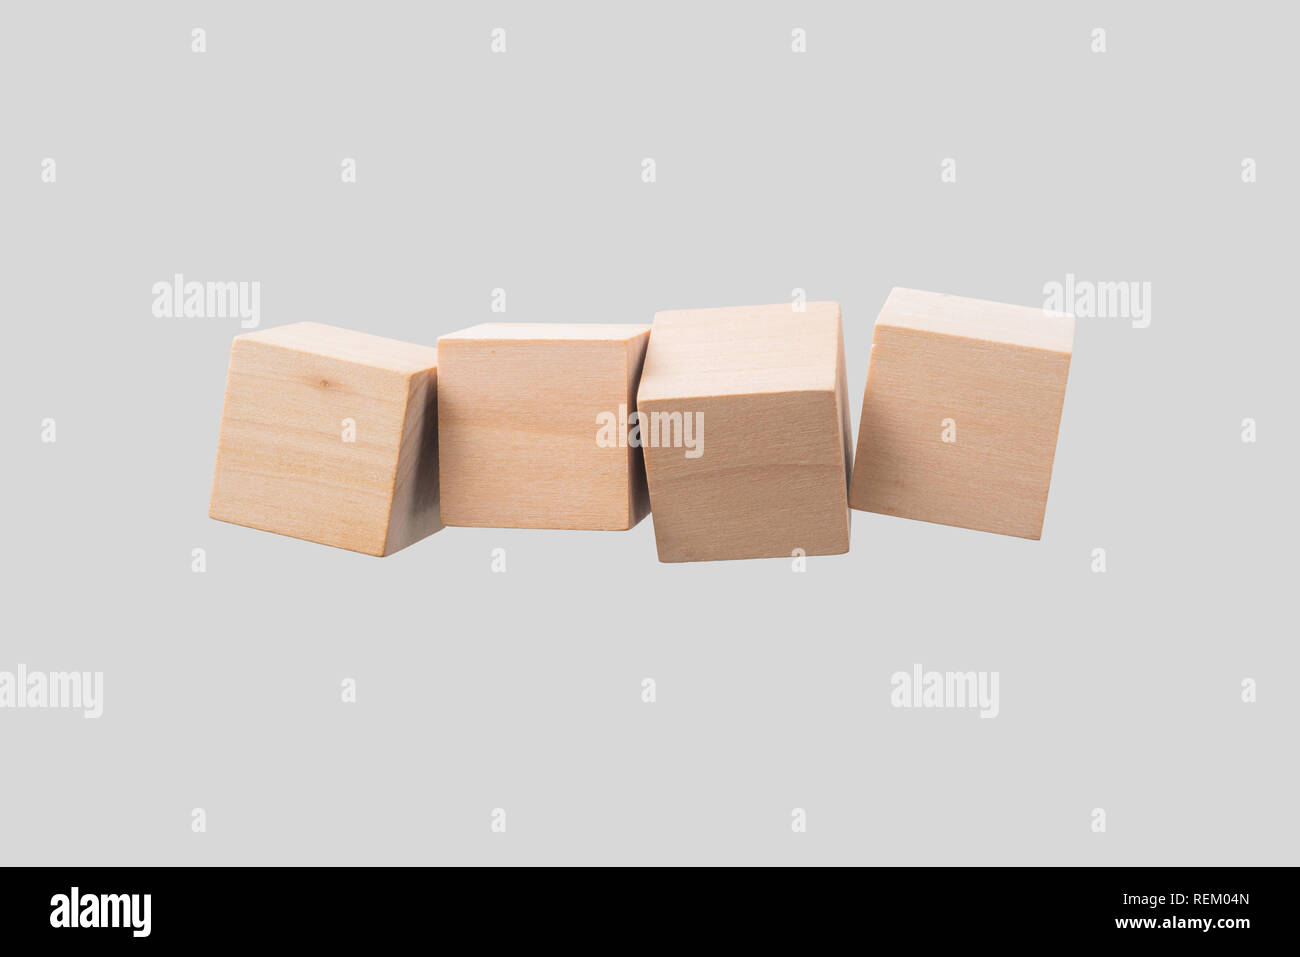 Business & design concept - Résumé du vrai géométrique cube de bois flottant isolé sur fond, c'est pas le 3D render. Banque D'Images